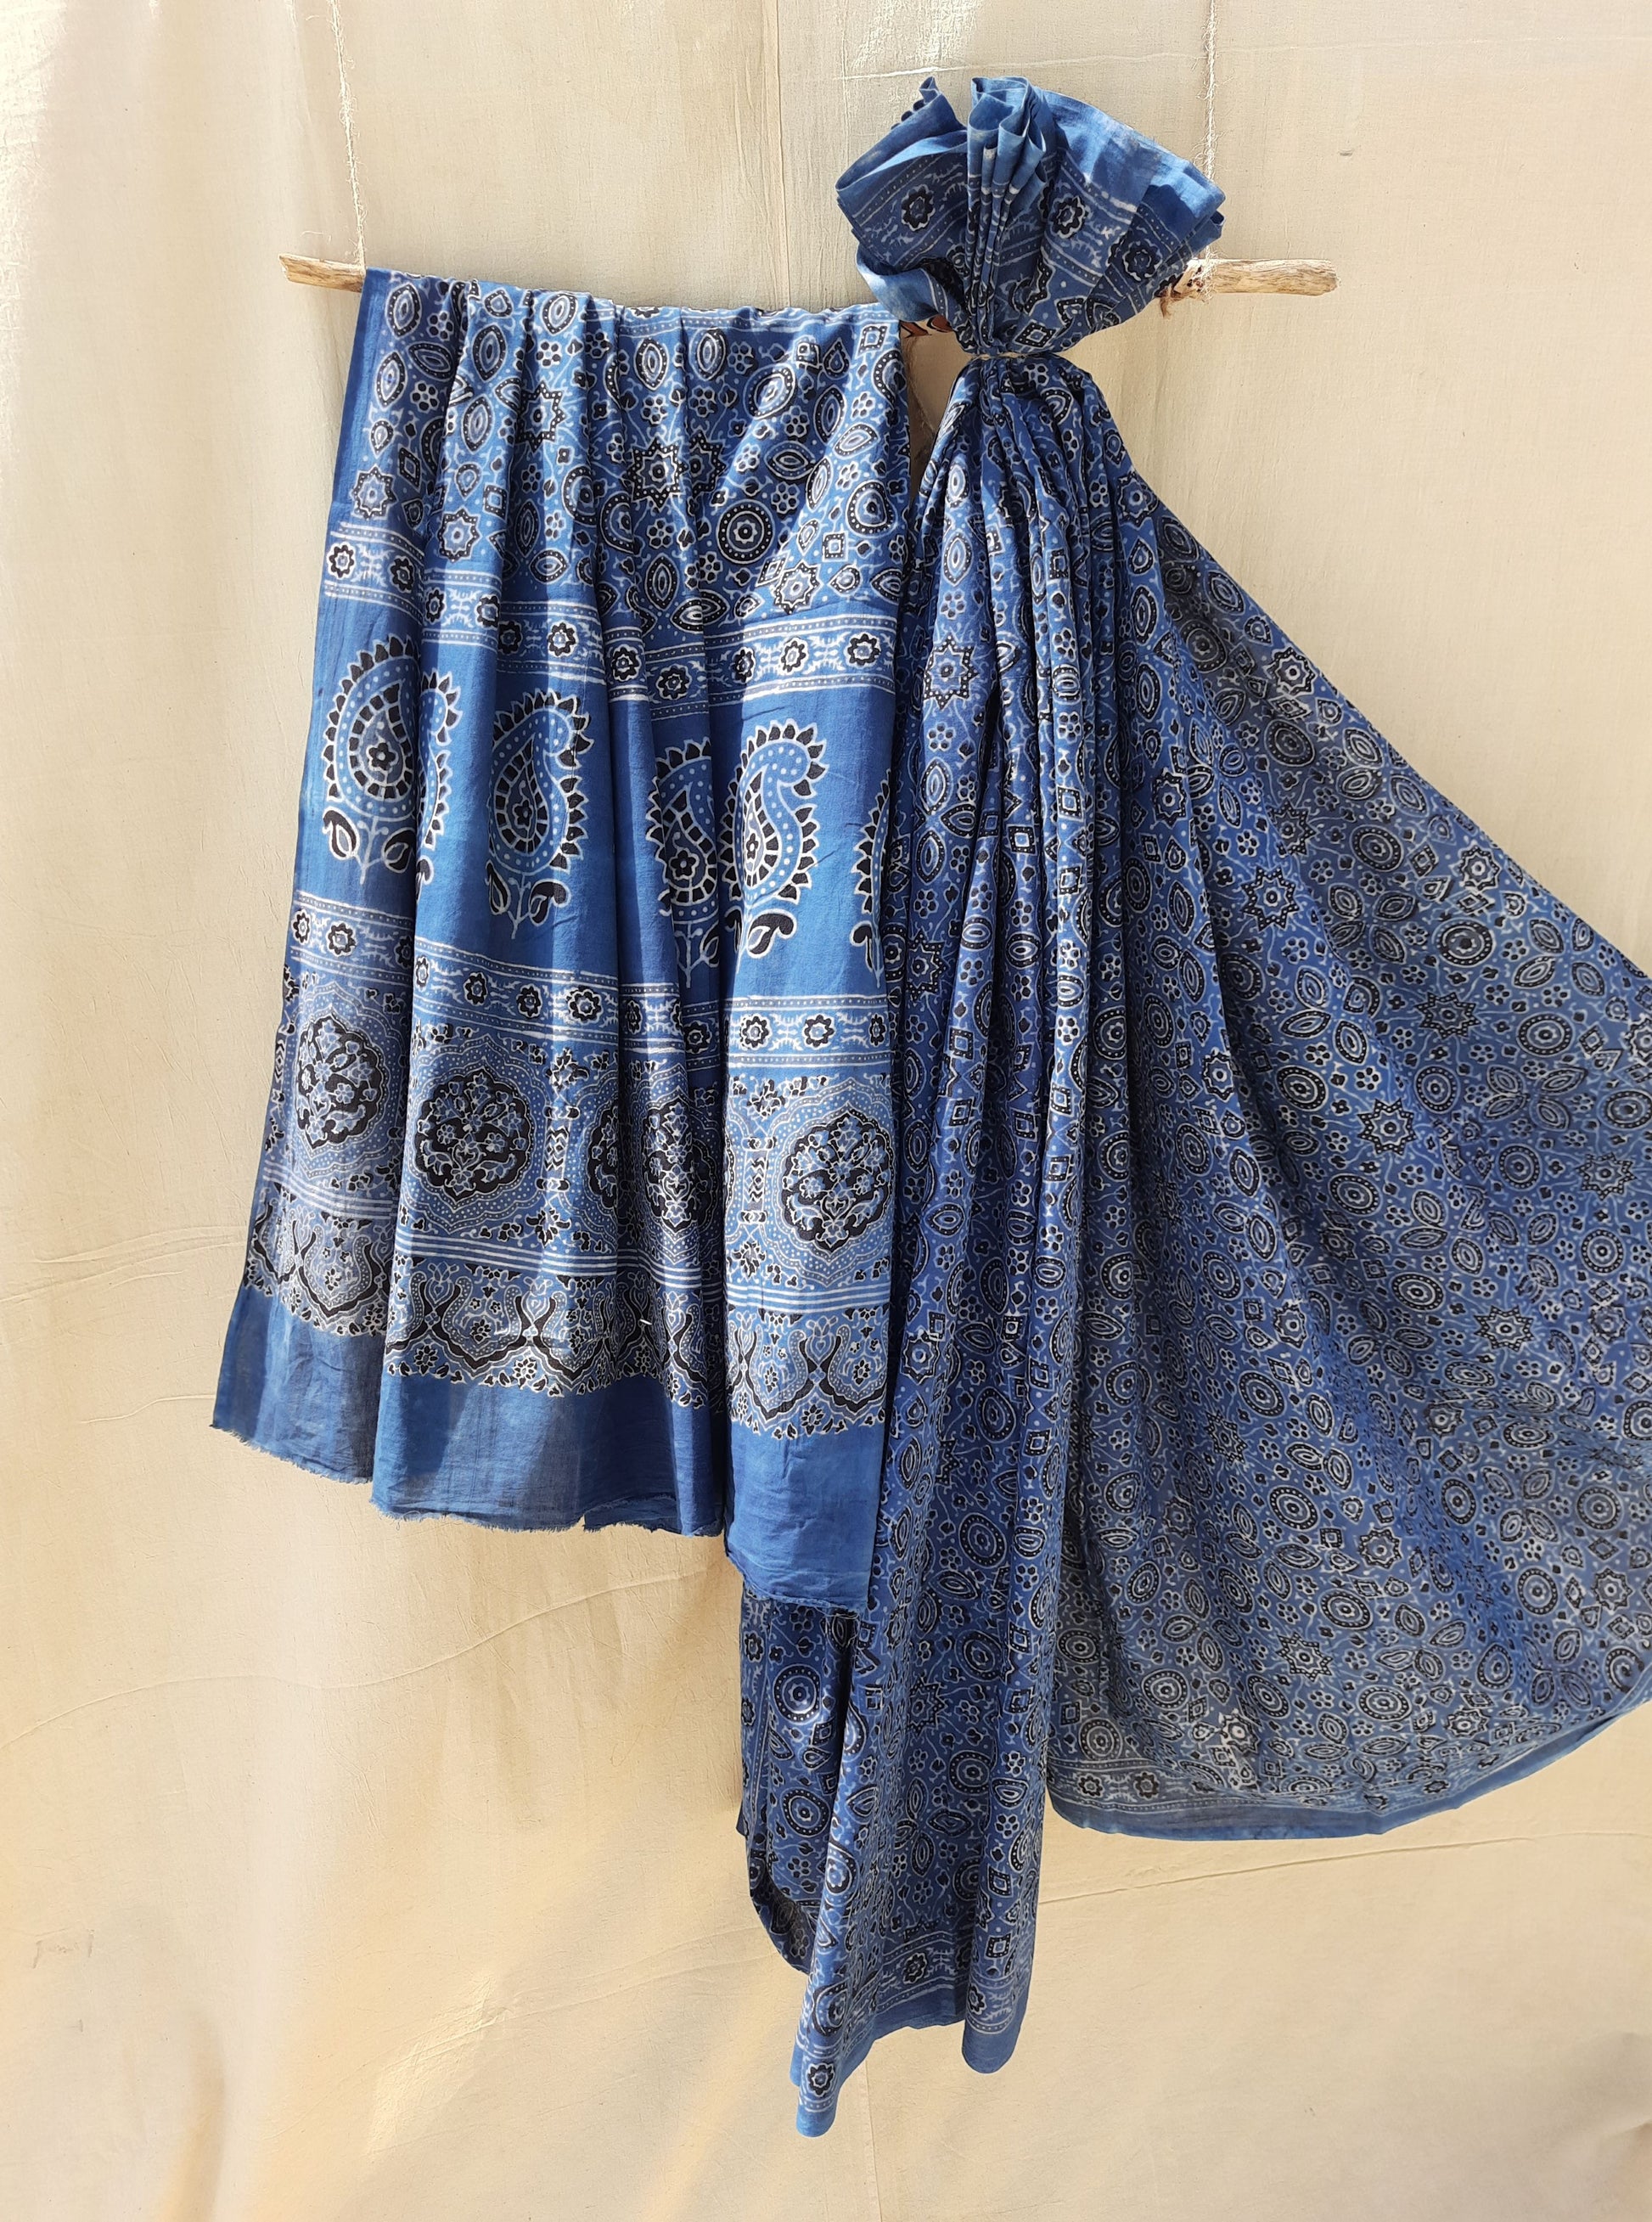 Ajrakh indigo saree in cotton, Ajrakh hand block print indigo dyed saree, Handmade cotton ajrakh prints saree